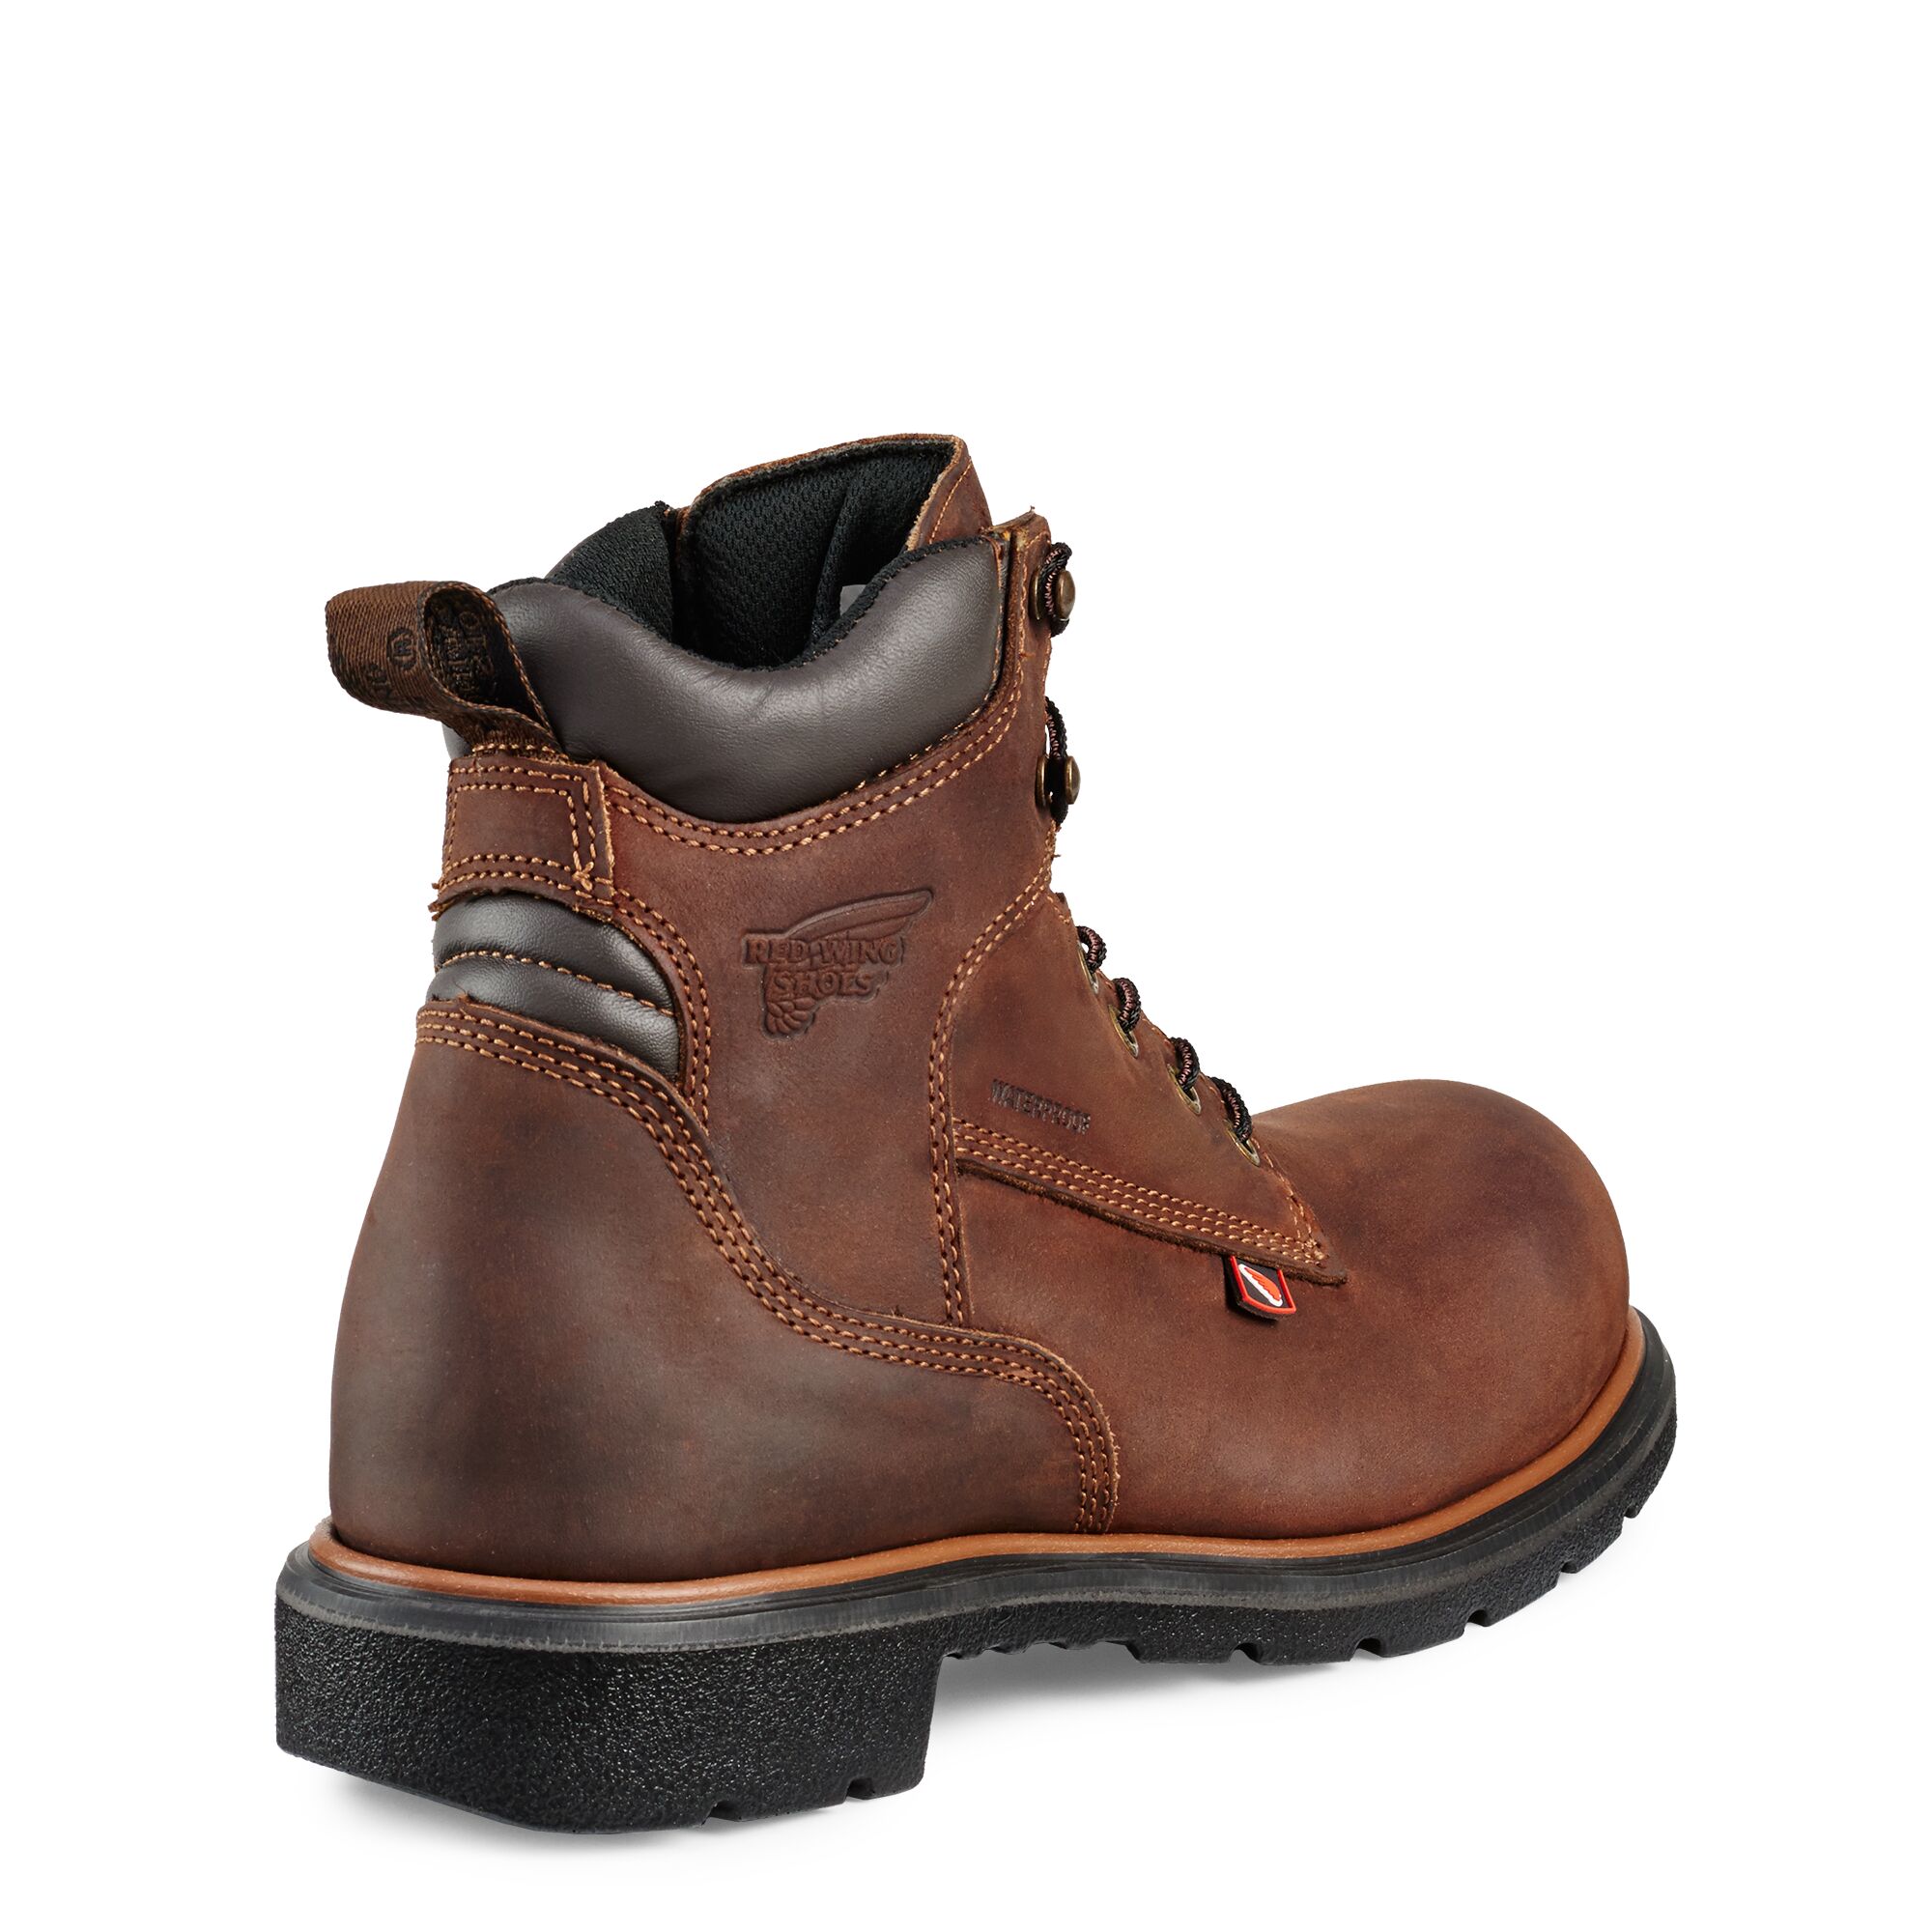 Men's Dynaforce 6" Waterproof Soft Toe Boots